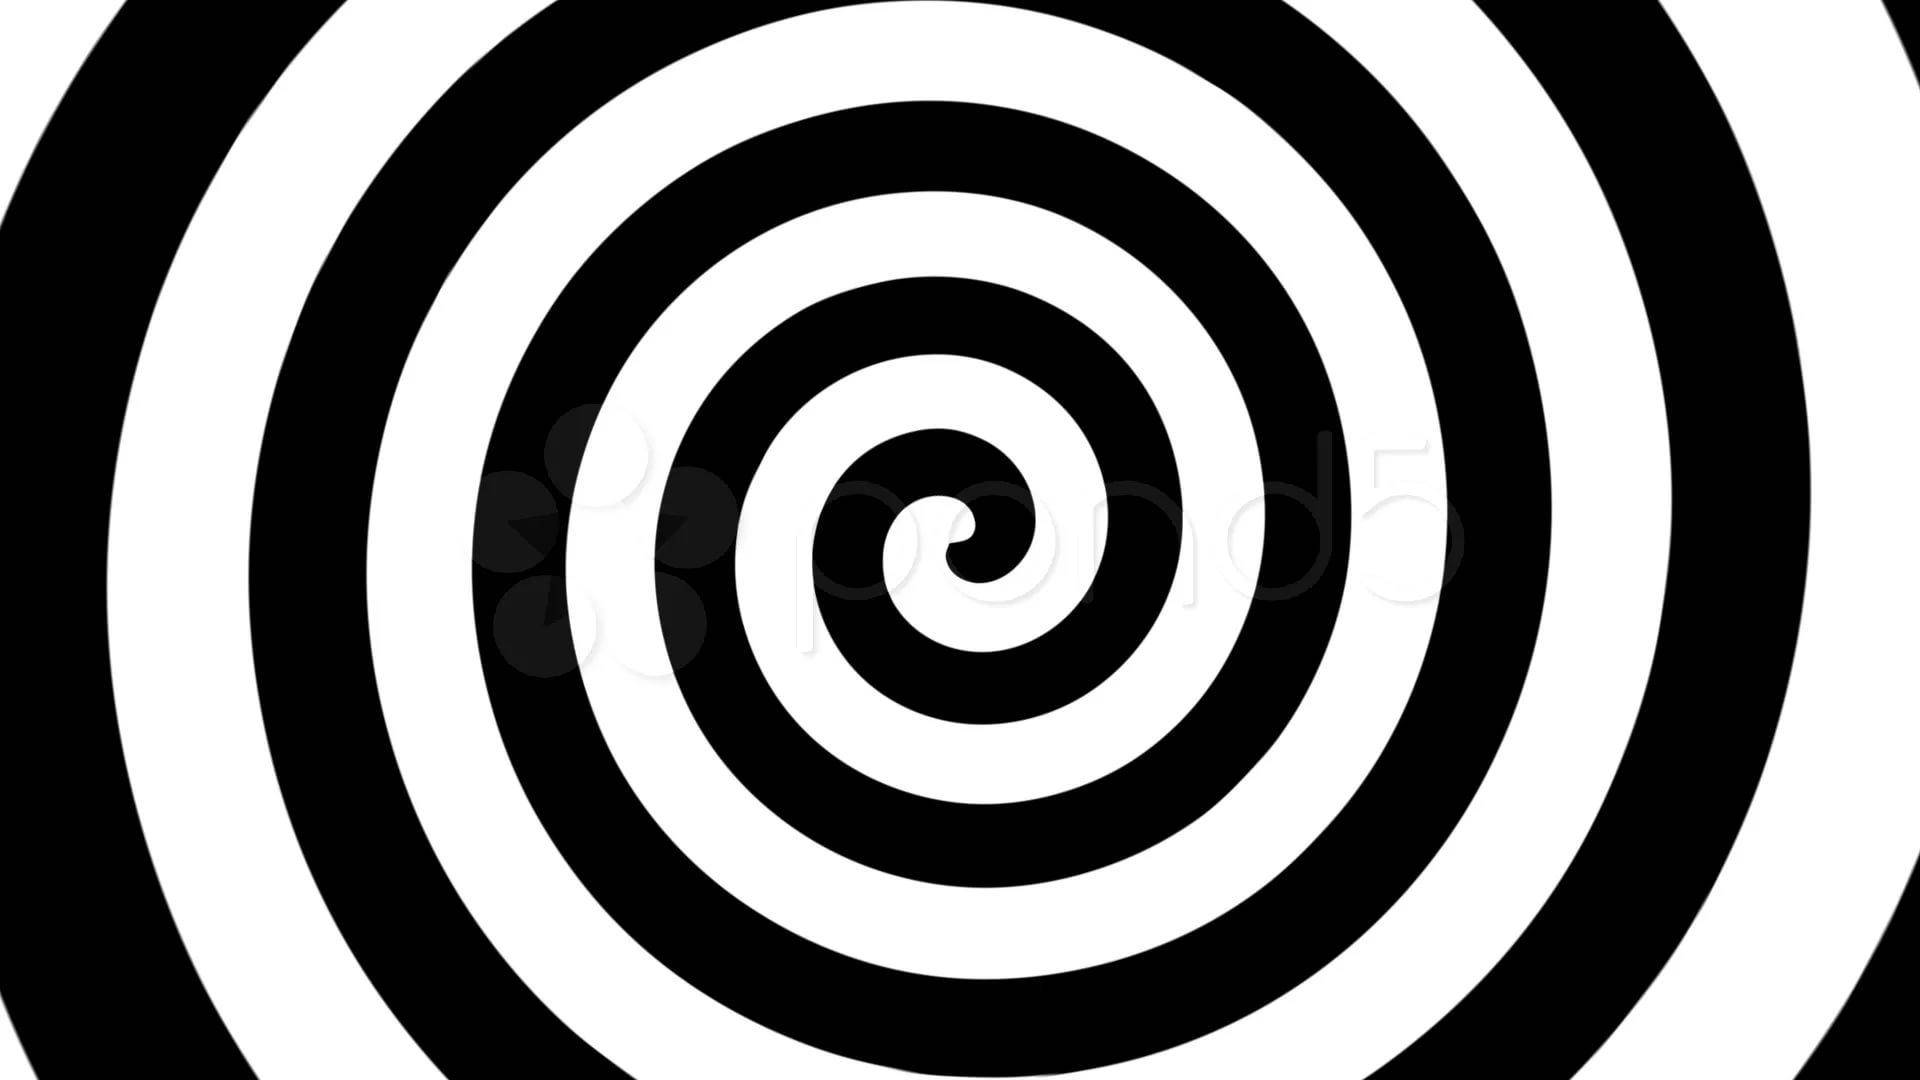 Arteóptico En Espiral En Blanco Y Negro. Fondo de pantalla